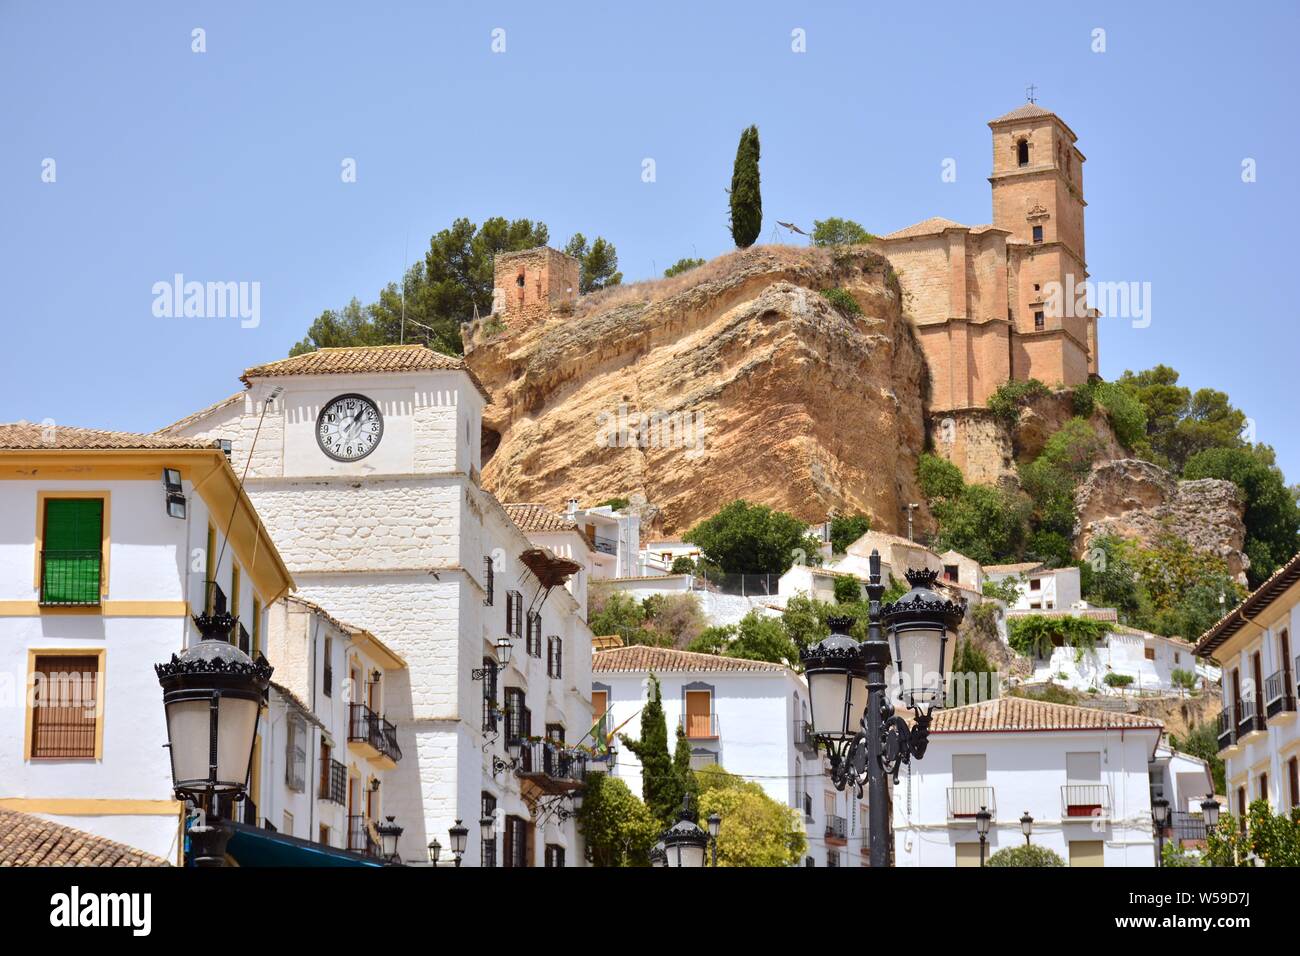 Vista del pueblo de Montefrío desde un mirador, Granada (España) Stock Photo